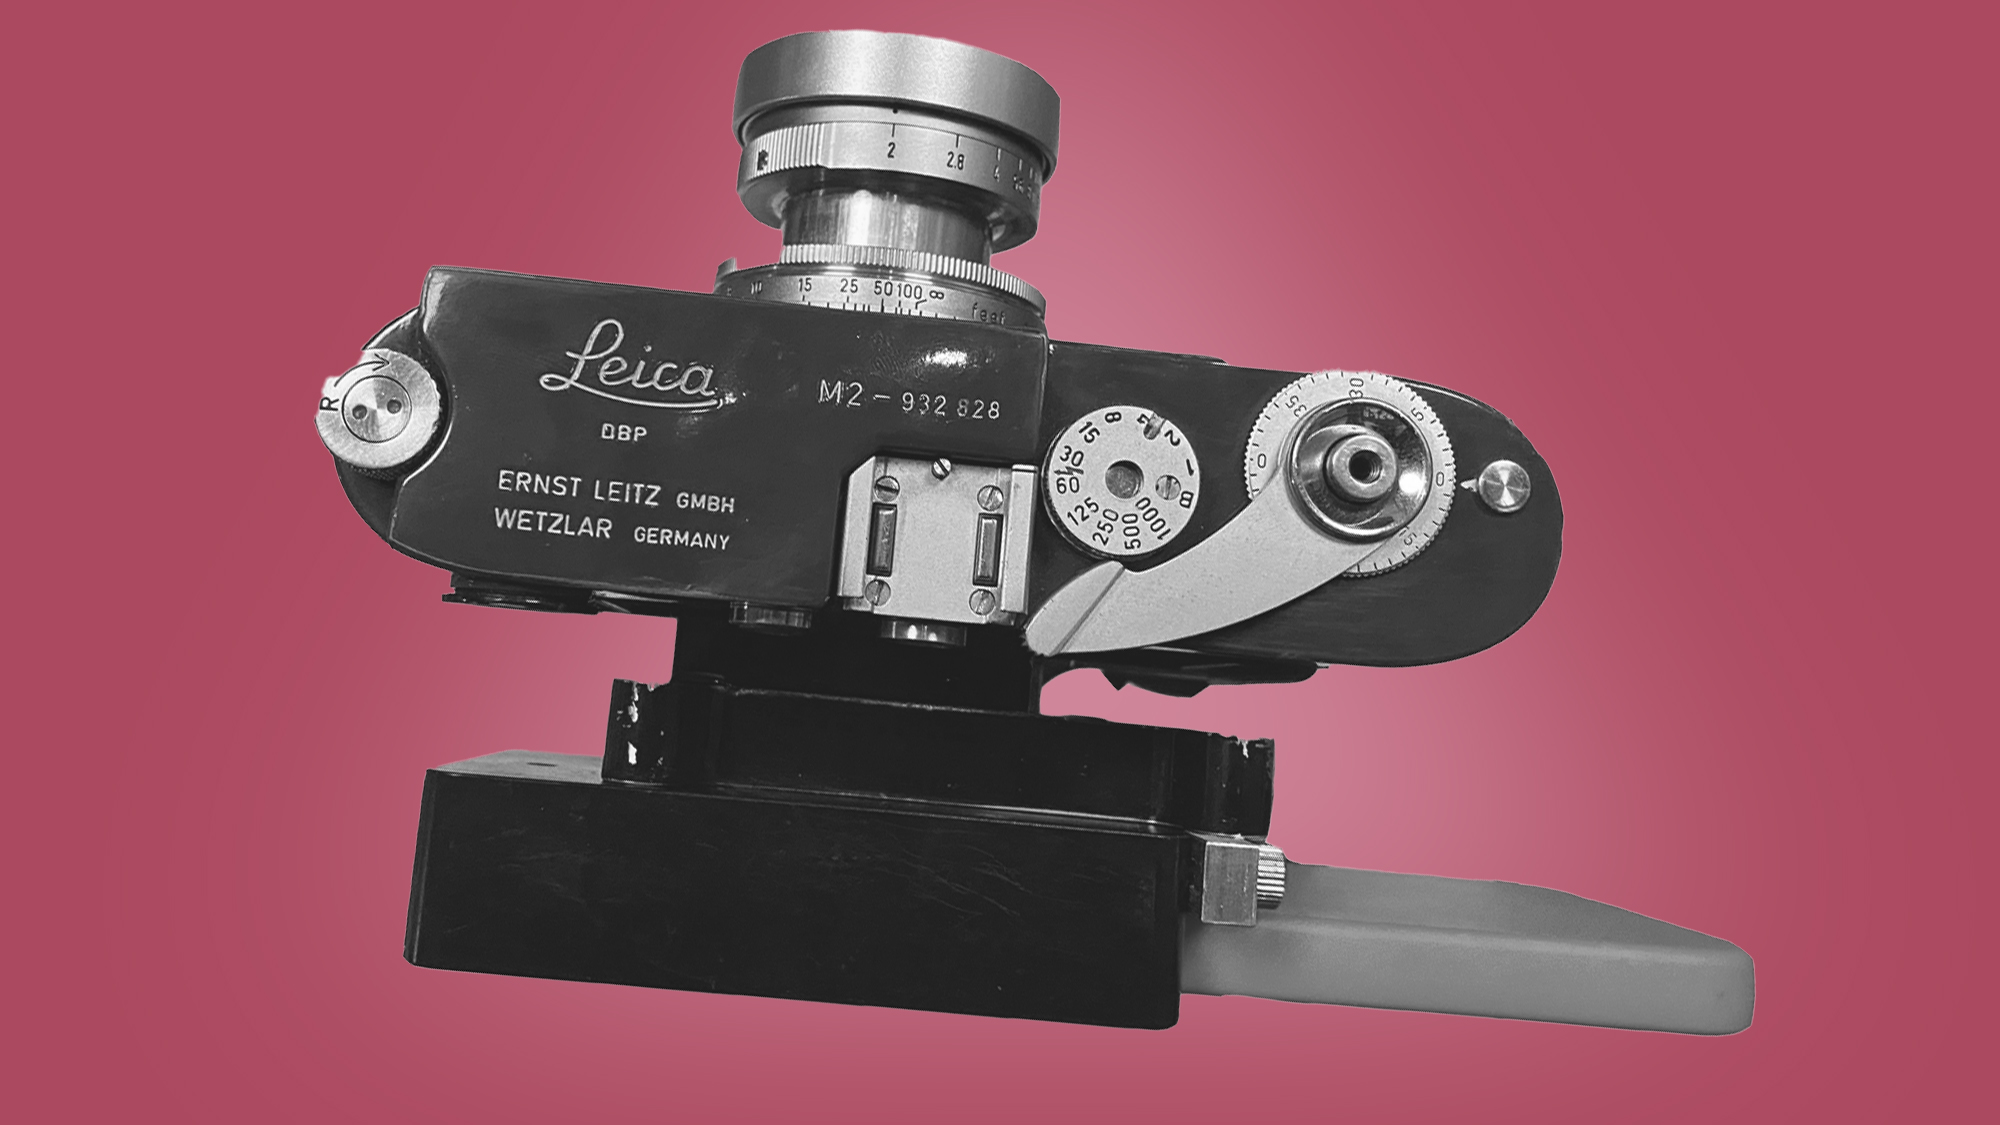 A Leica camera with the Digi Swap accessory